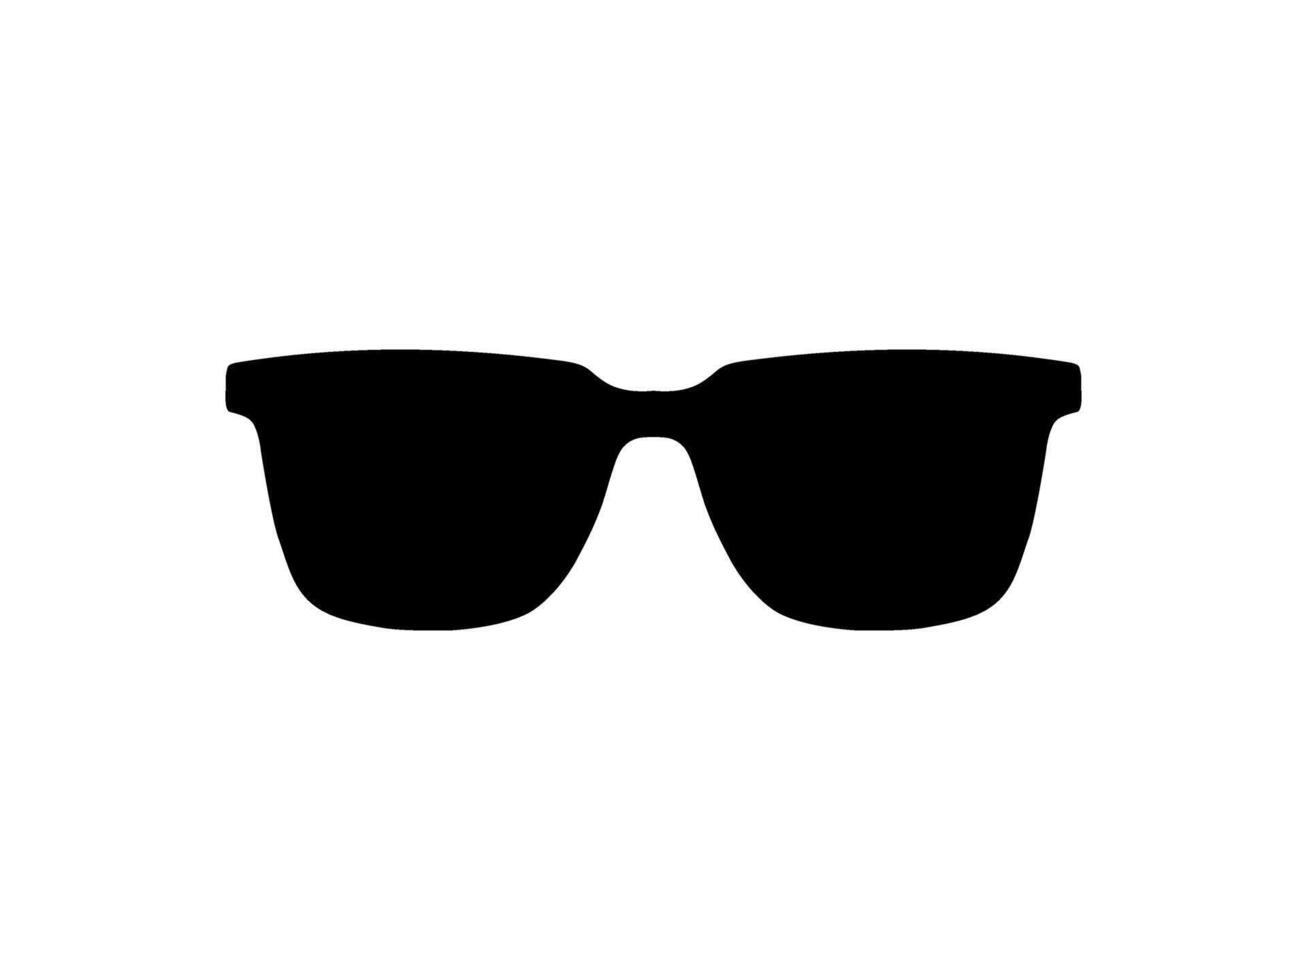 zon oog bril silhouet, pictogram, voorkant visie, vlak stijl, kan gebruik voor logo gram, appjes, kunst illustratie, sjabloon voor avatar profiel afbeelding, website, of grafisch ontwerp element. vector illustratie